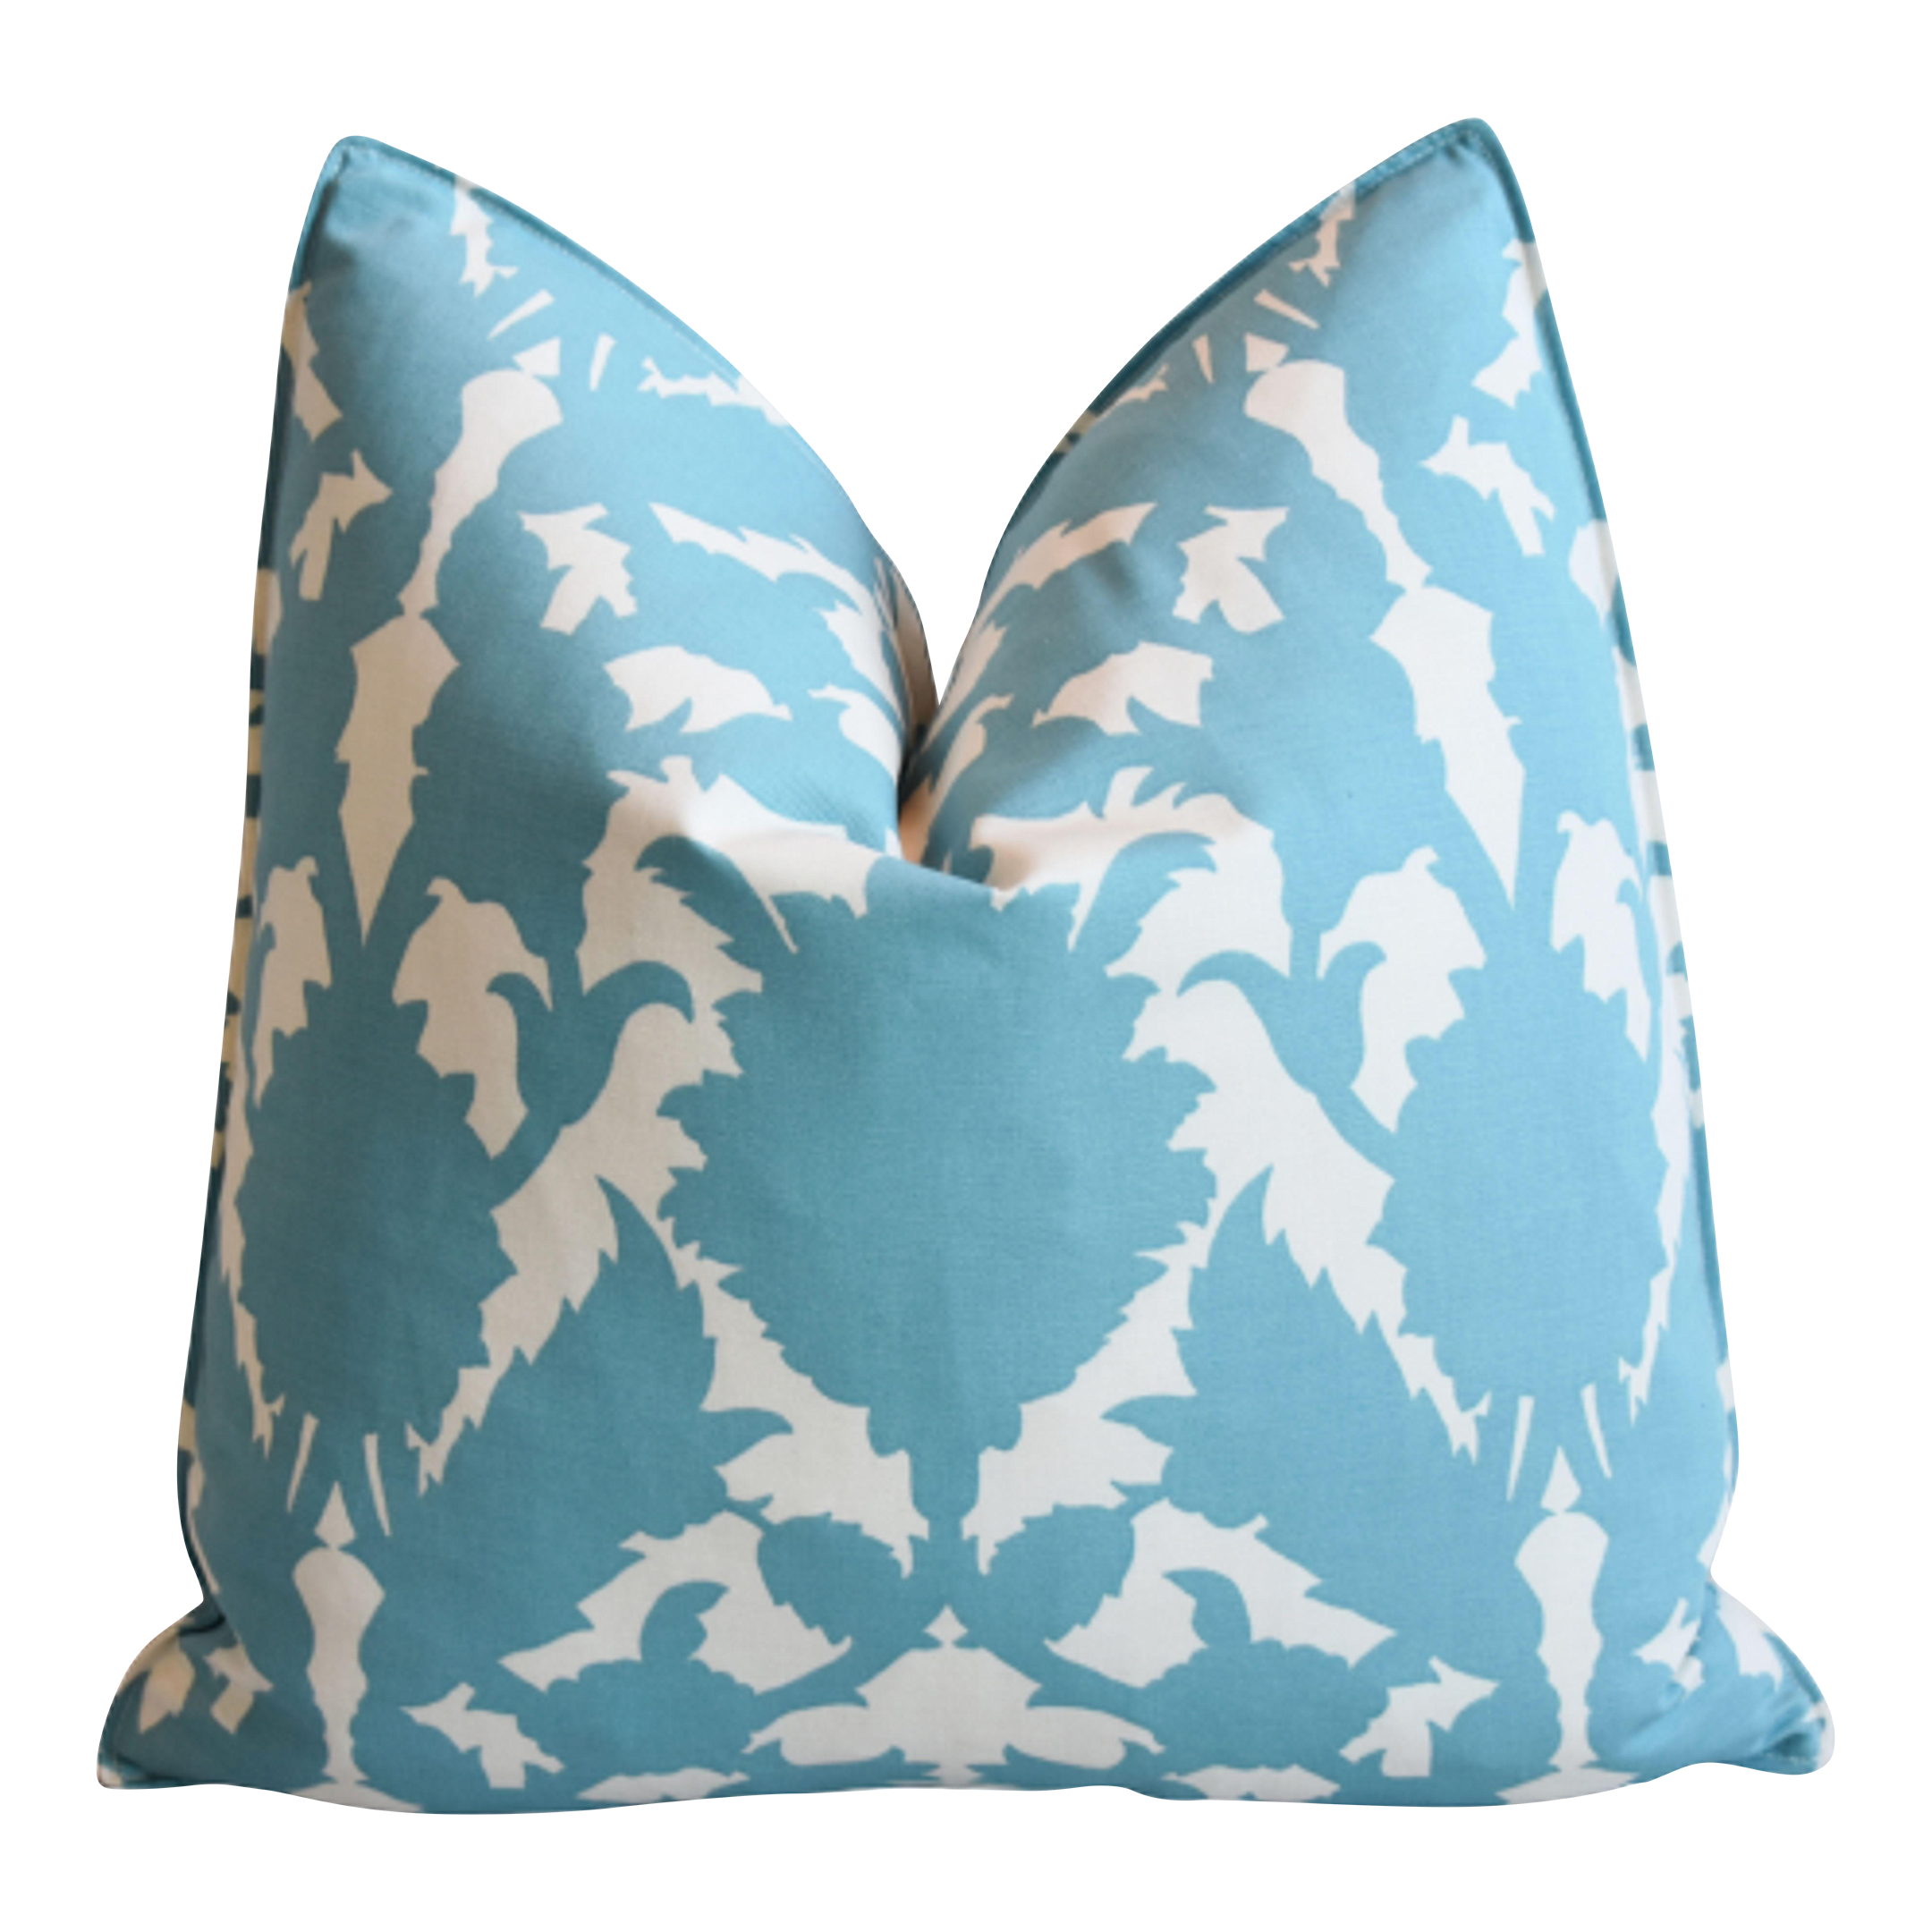 Designer Thomas Paul Turquoise Pillow~P77663192